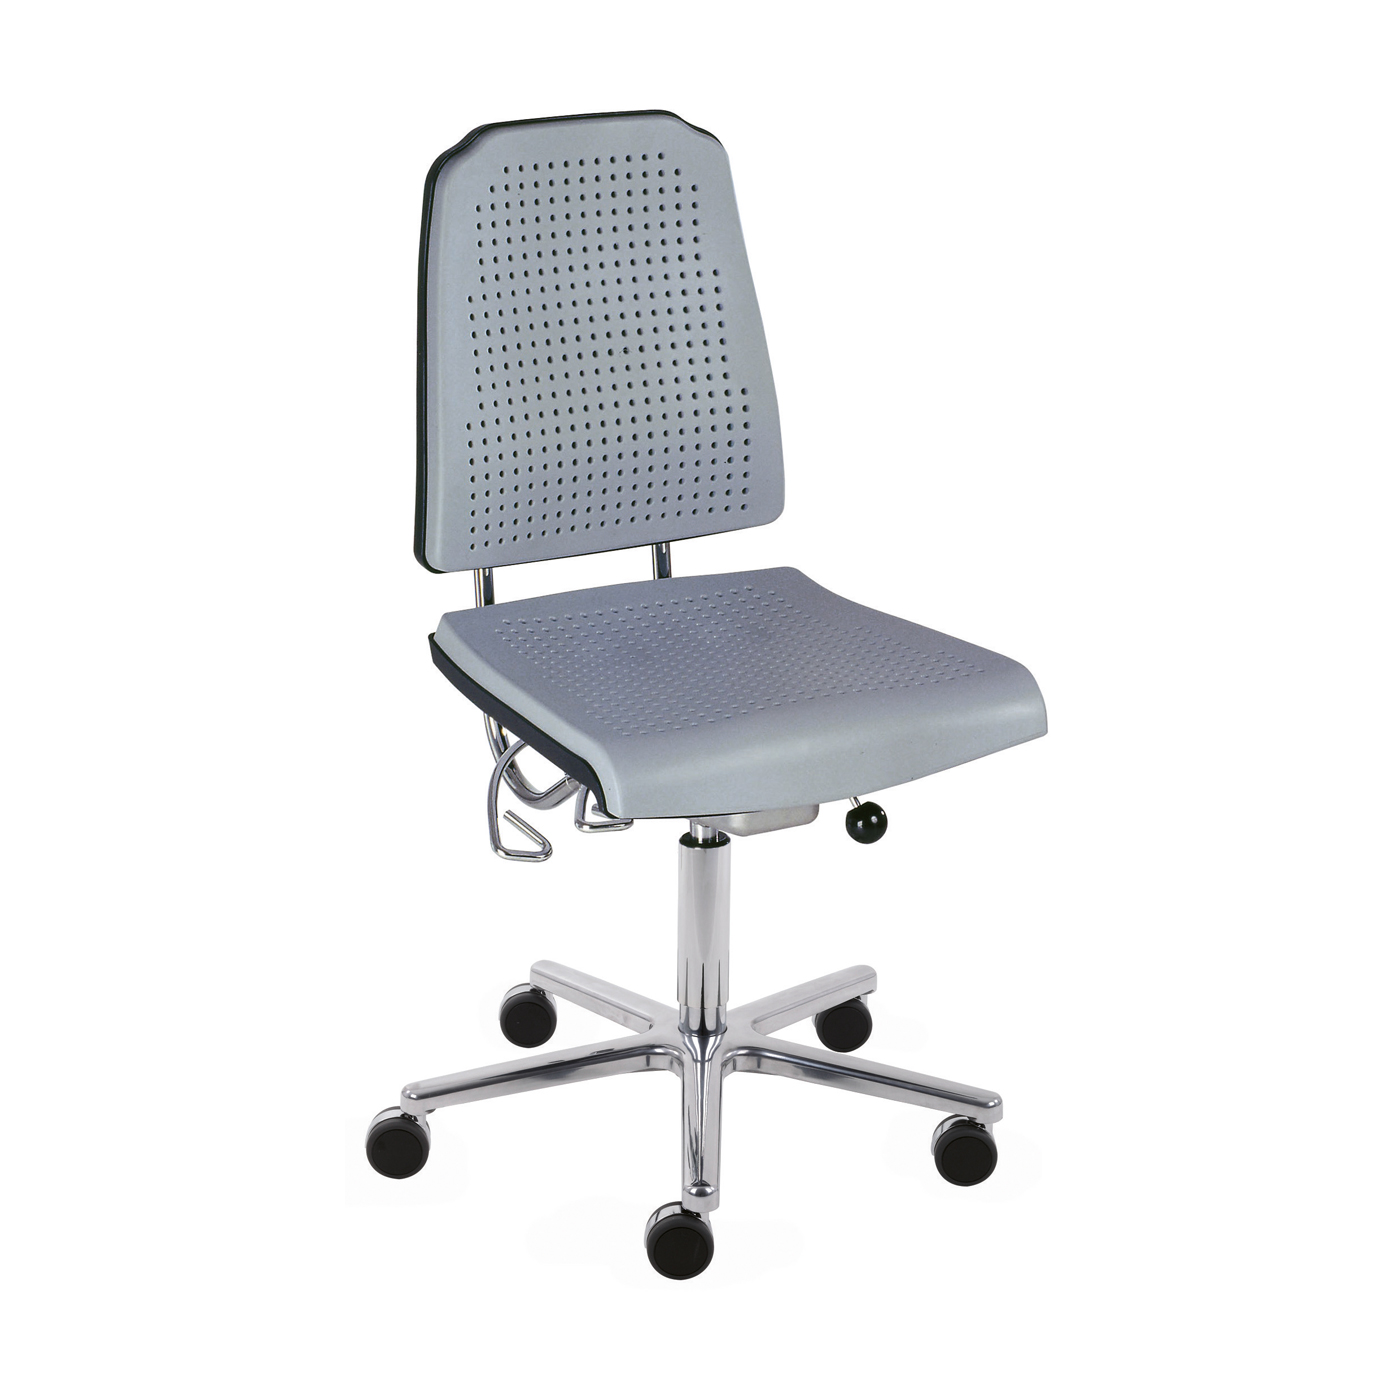 Klimastar Swivel Chair, Tele Grey - 1 piece